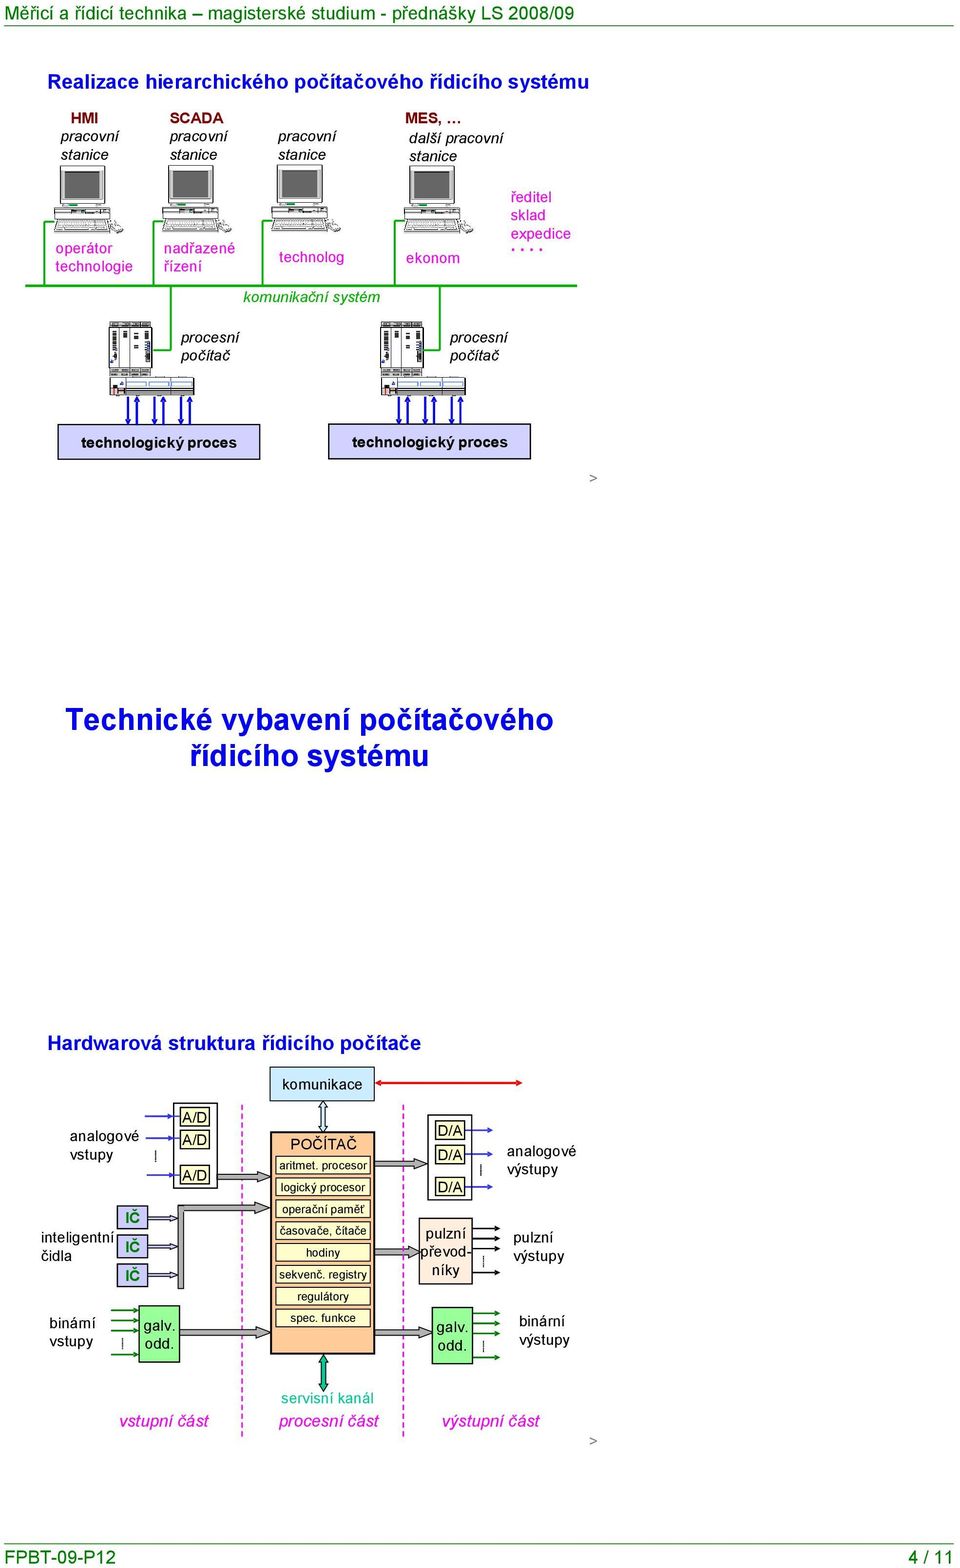 ... komunikační systém procesní počítač procesní počítač technologický proces technologický proces Technické vybavení počítačového řídicího systému Hardwarová struktura řídicího počítače